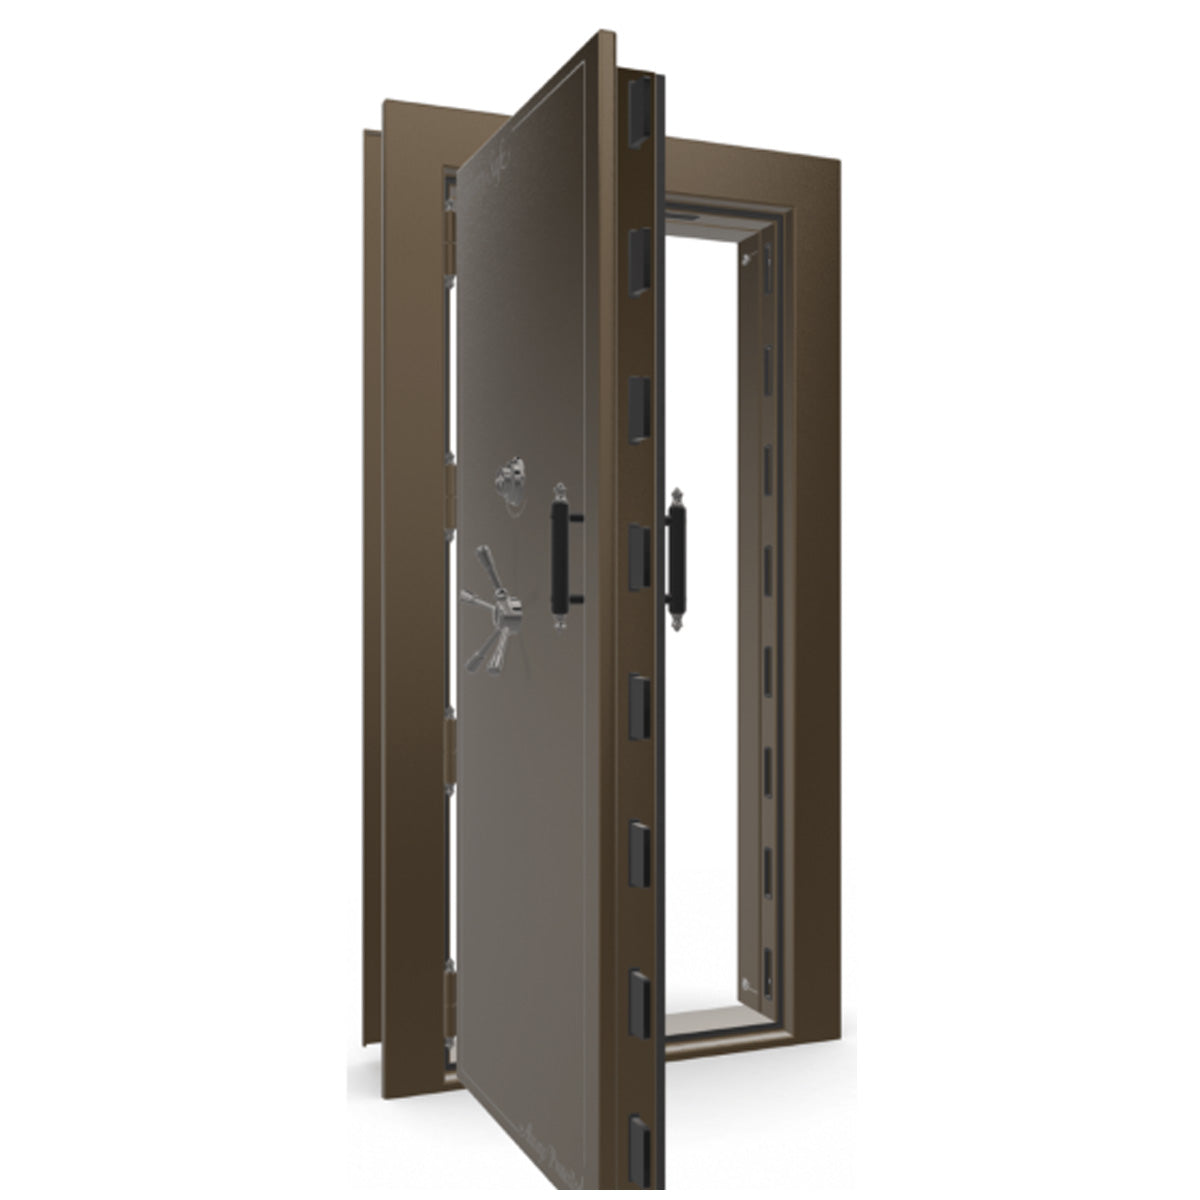 The Beast Vault Door in Bronze Gloss with Black Chrome Electronic Lock, Left Outswing, door open.